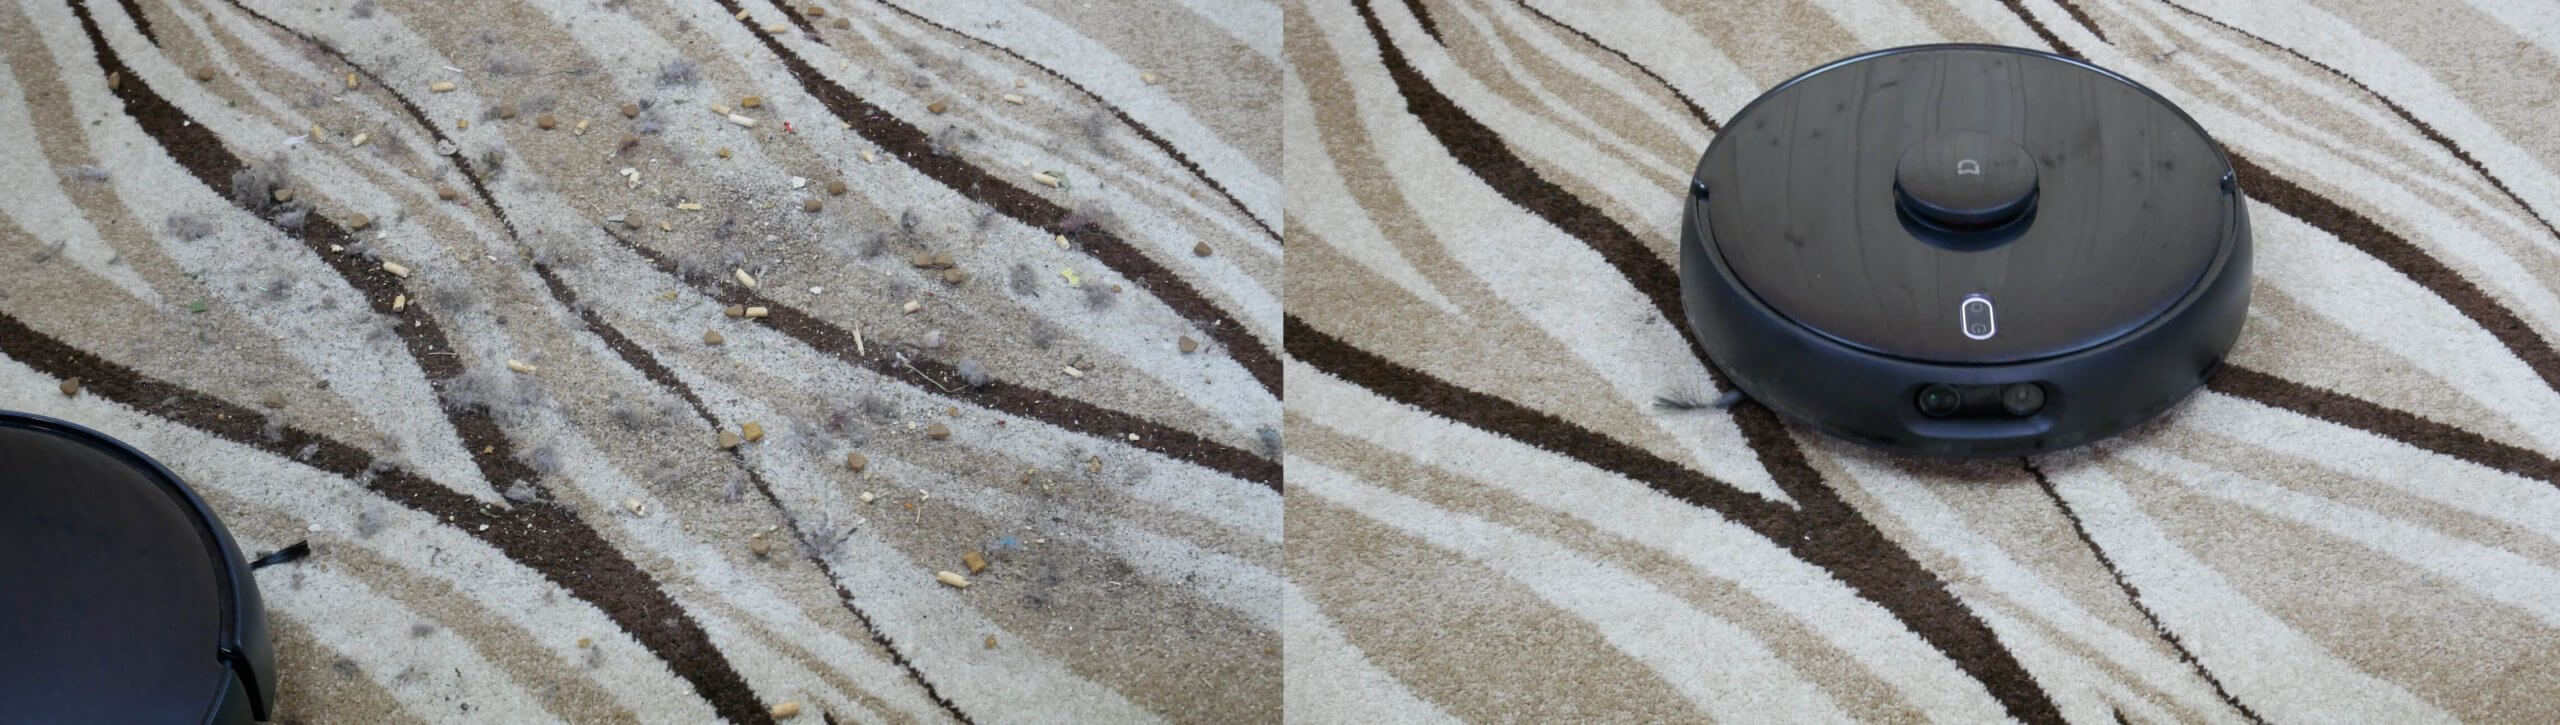 Сухая уборка на ковре Xiaomi Mijia Vacuum Cleaner Pro